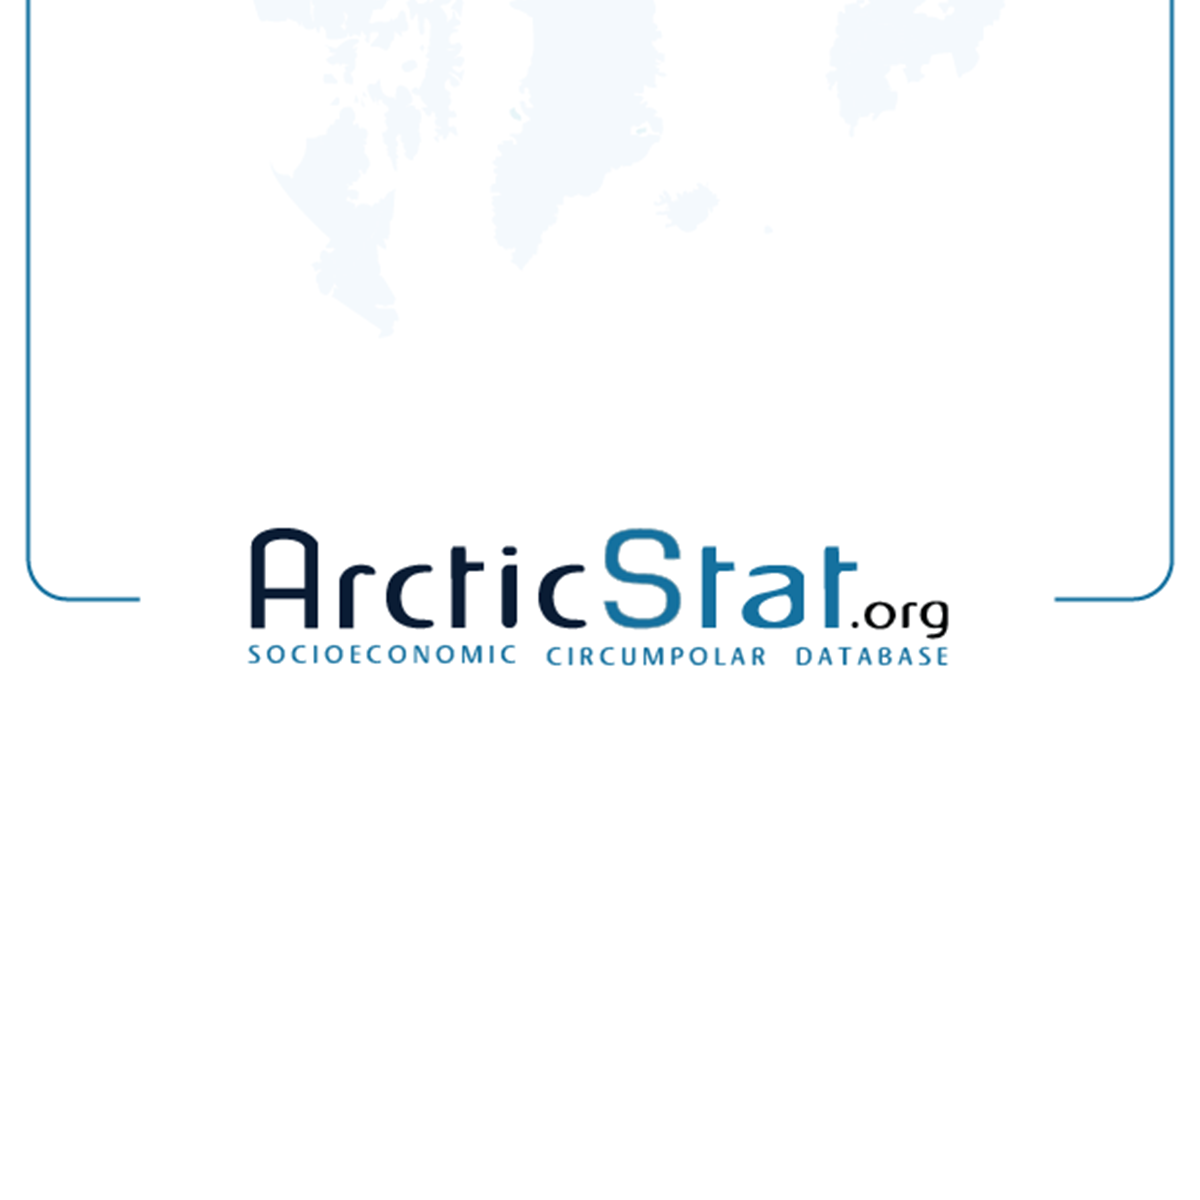 (c) Arcticstat.org